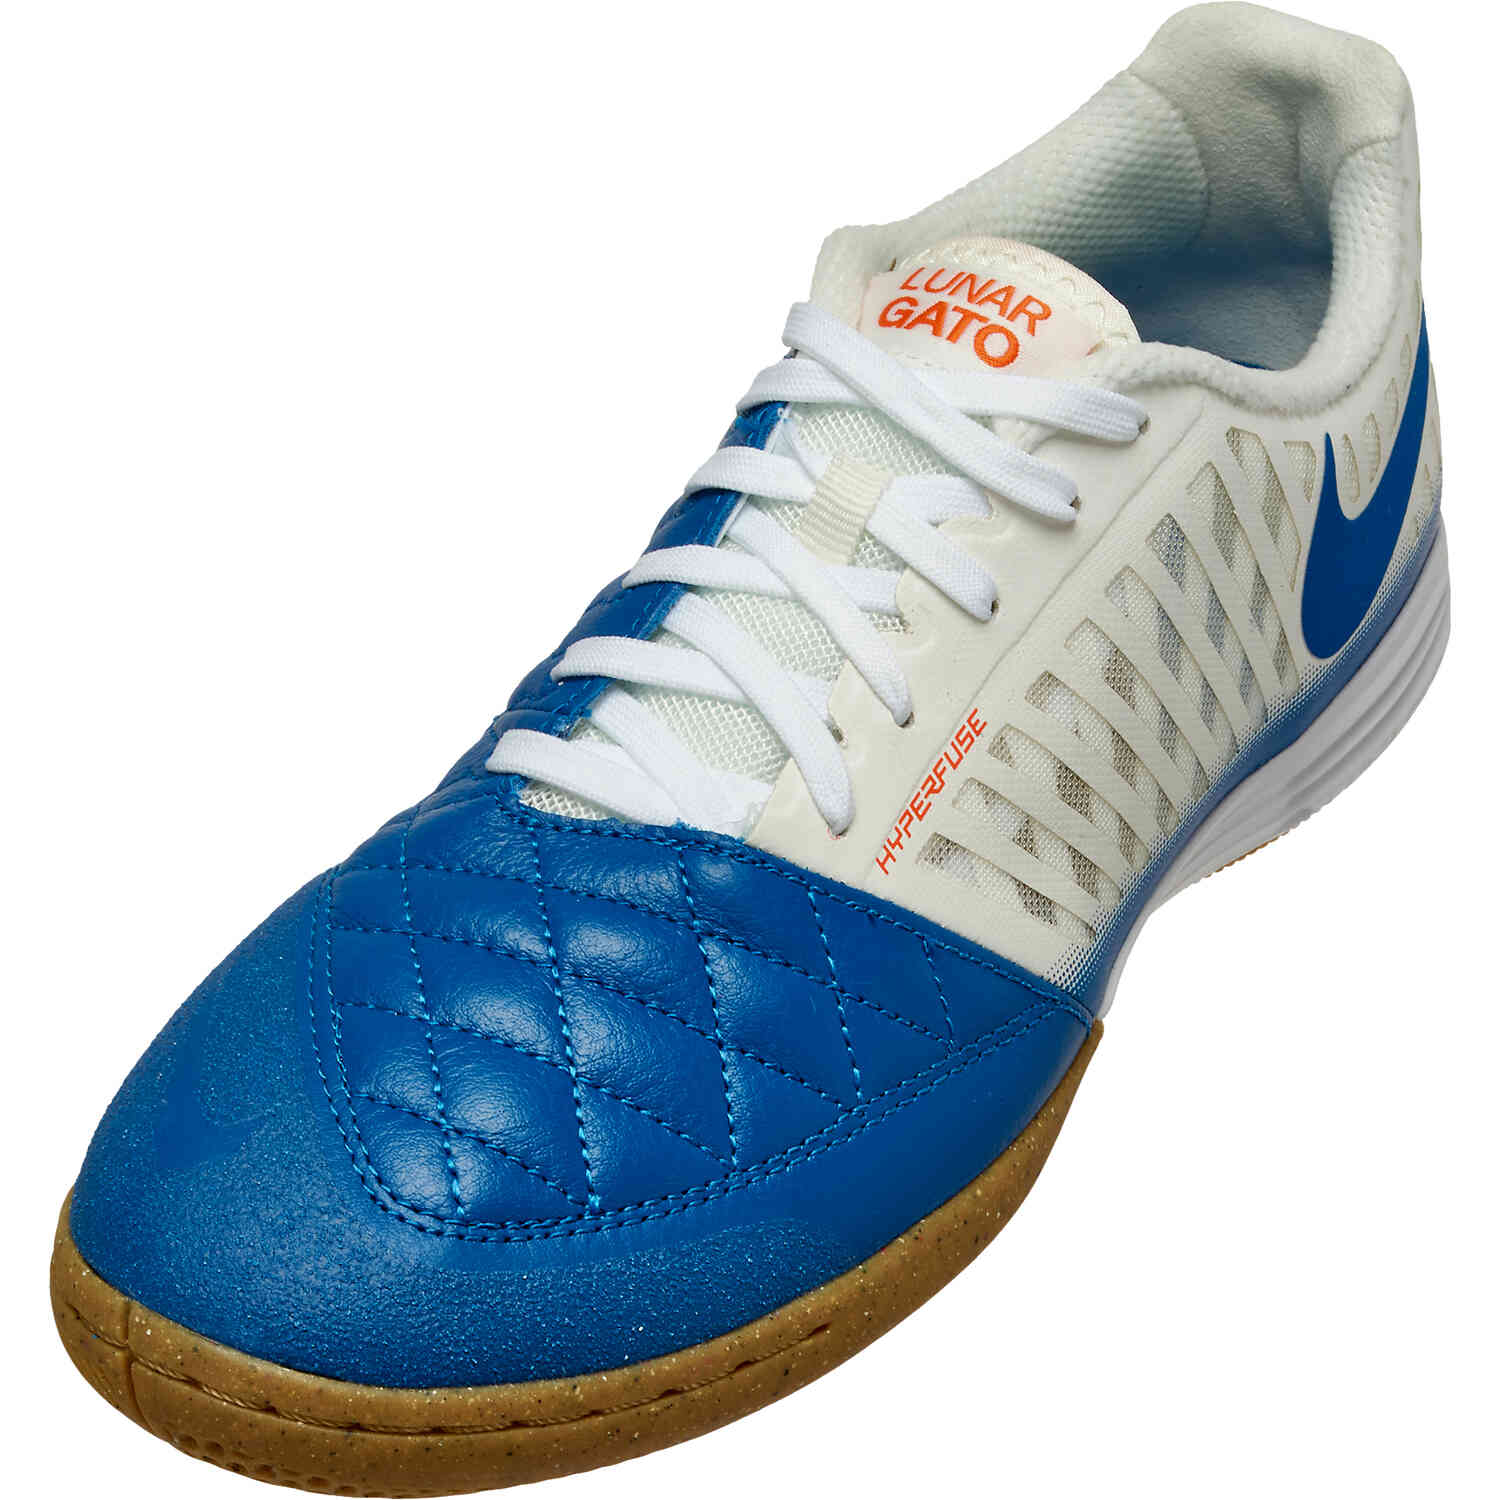 Nike Lunargato II - & Blue Jay with White